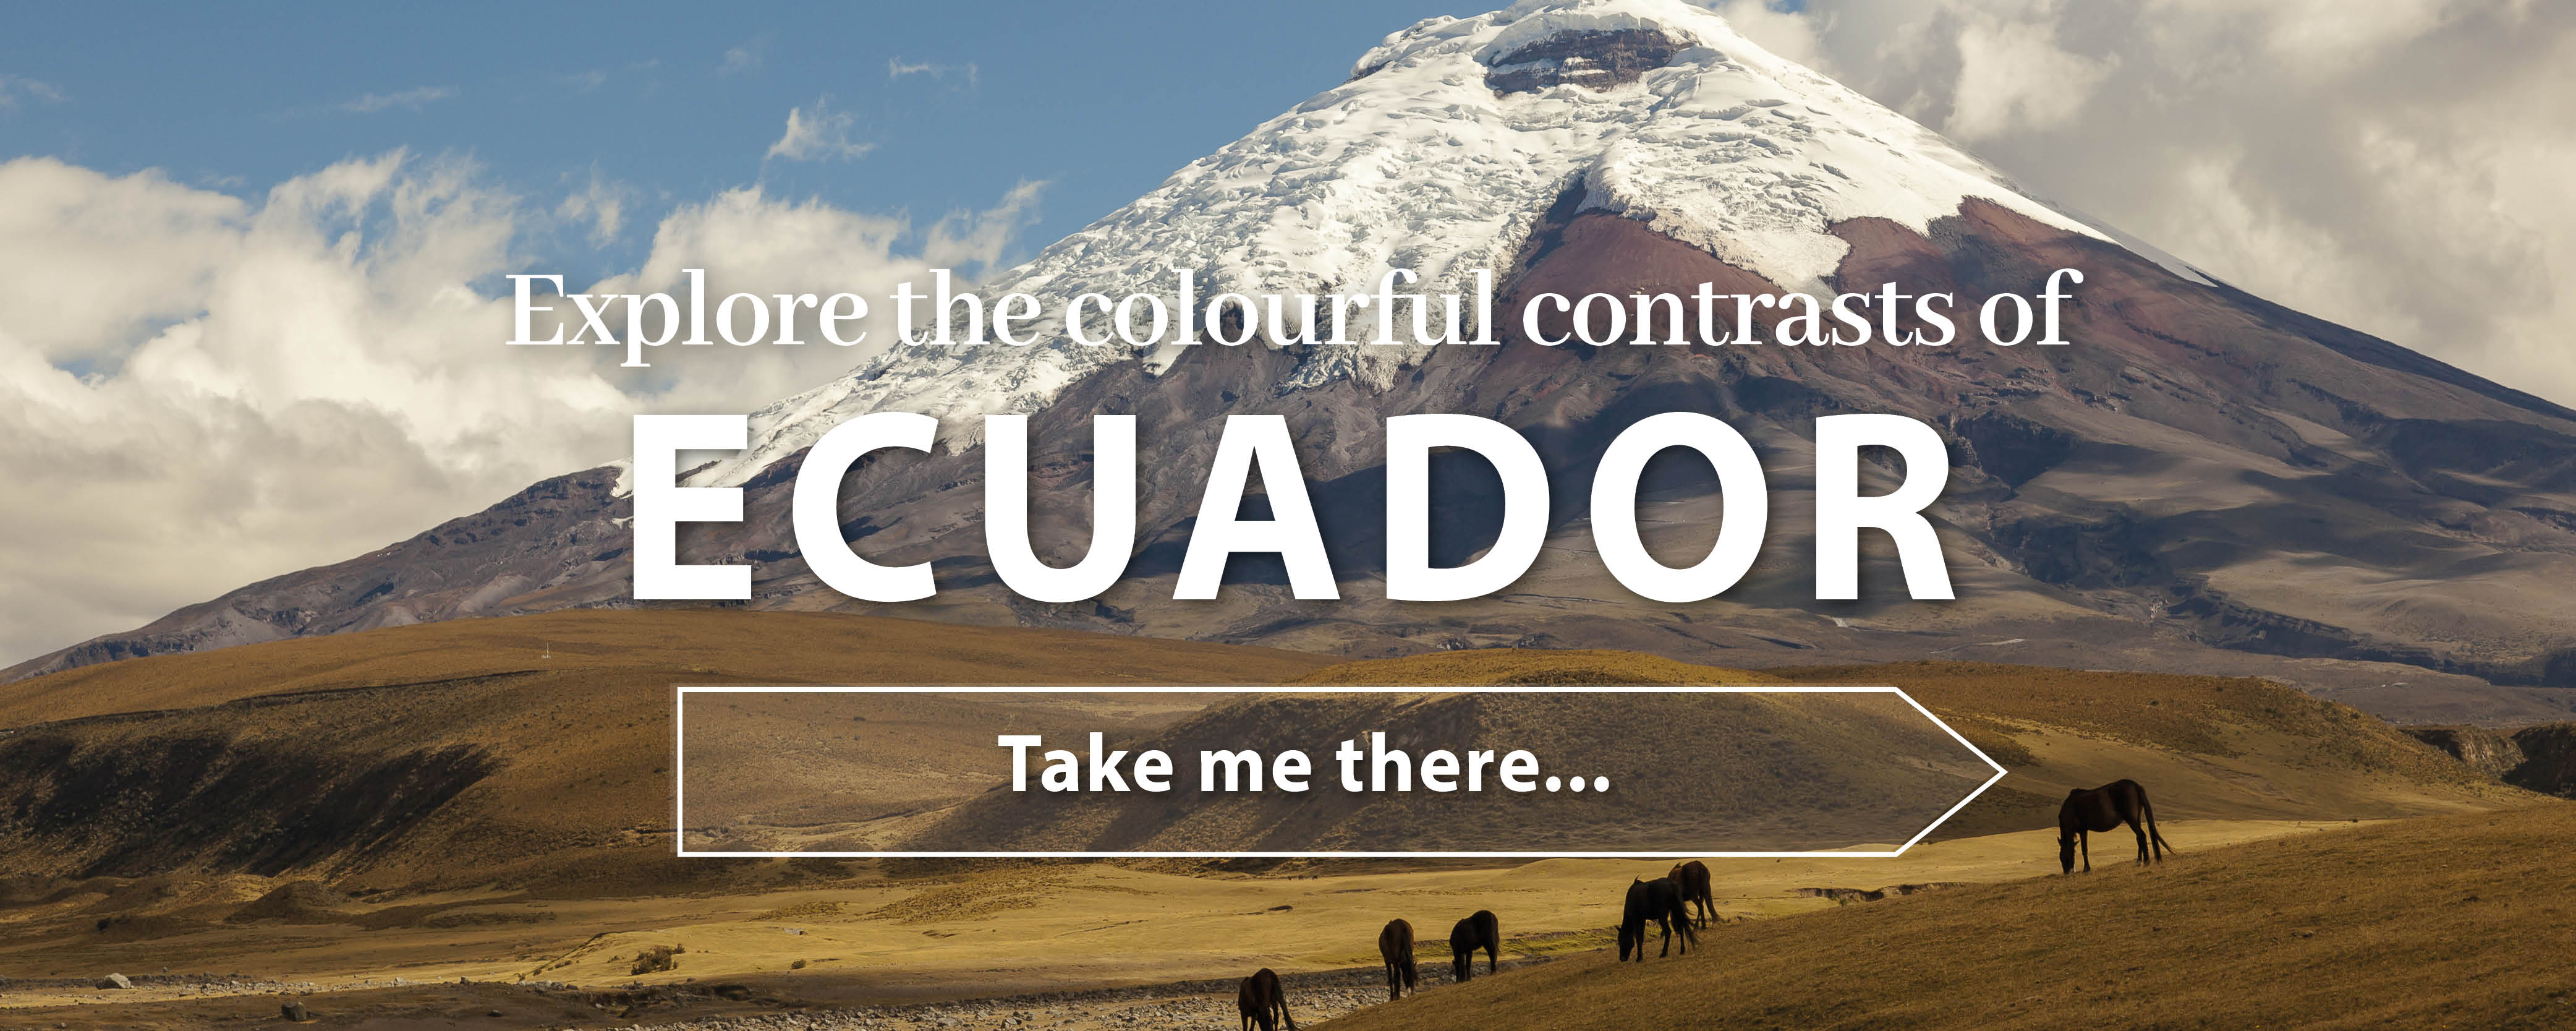 test free travel destinations Ecuador